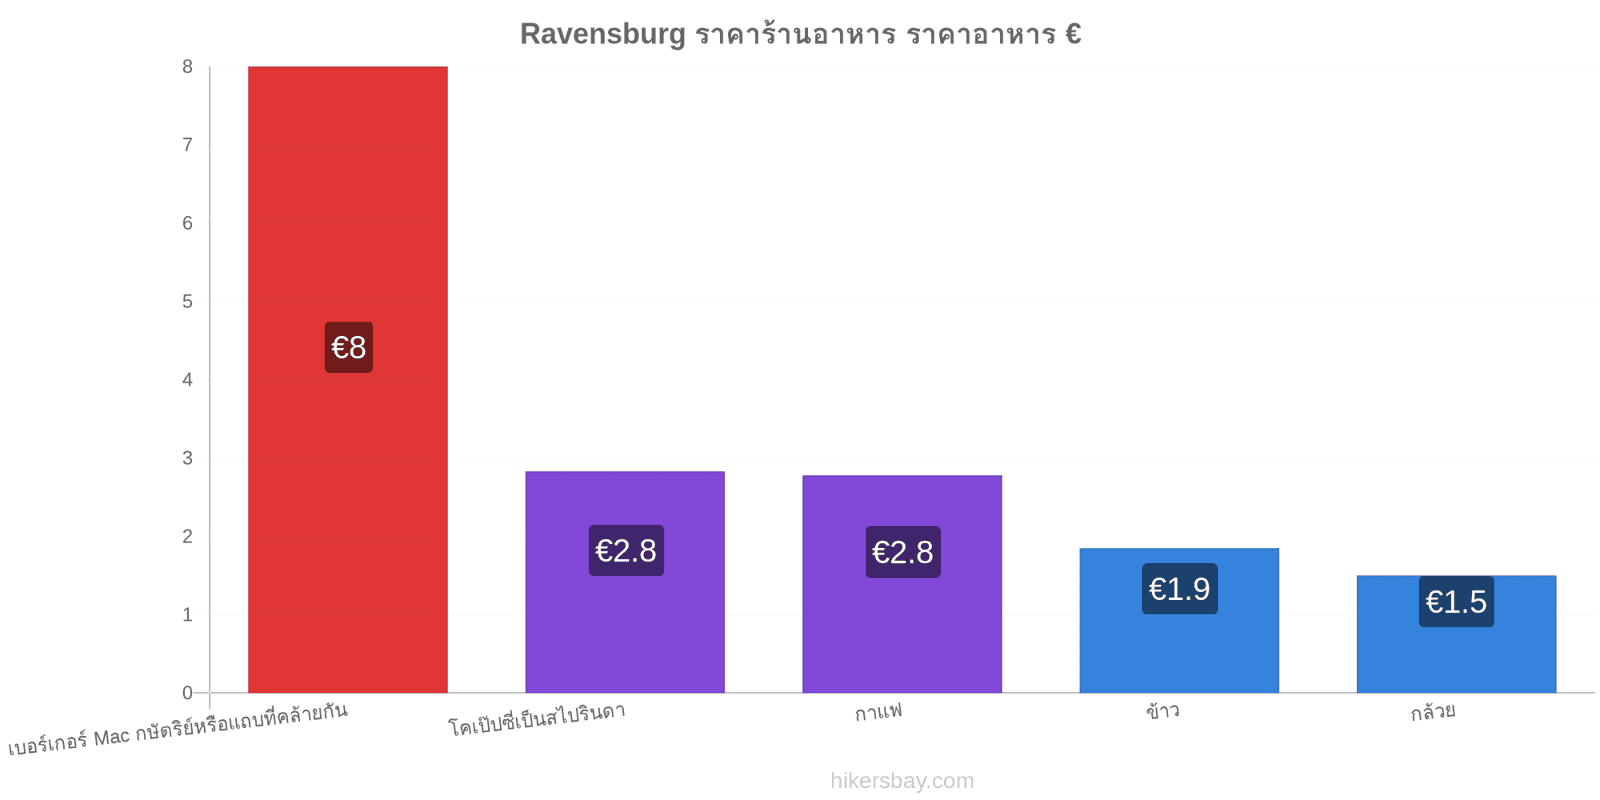 Ravensburg การเปลี่ยนแปลงราคา hikersbay.com